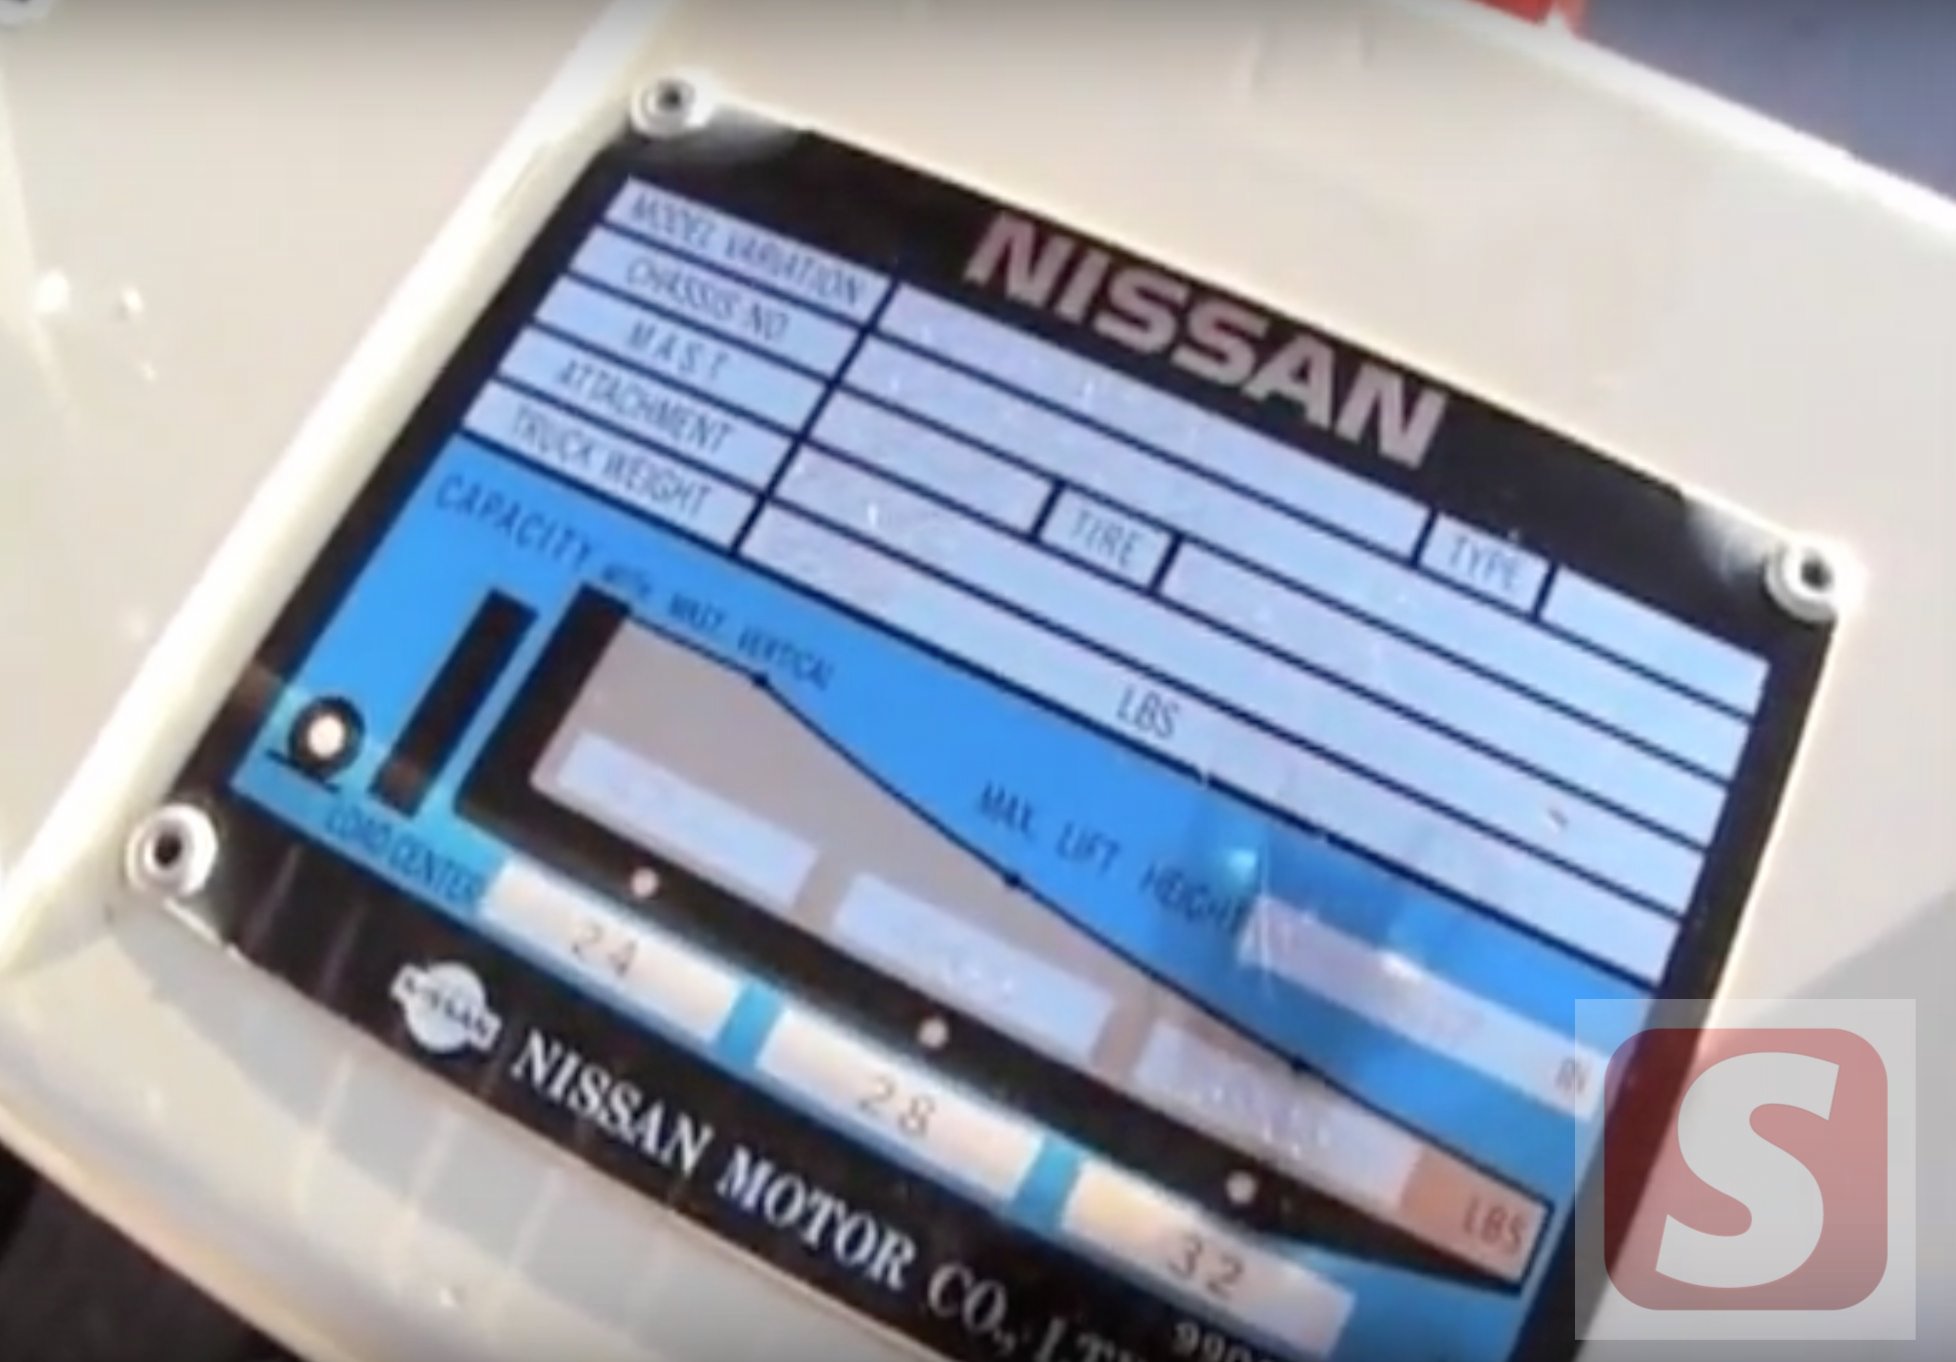 Nissan forklift serial number decoder